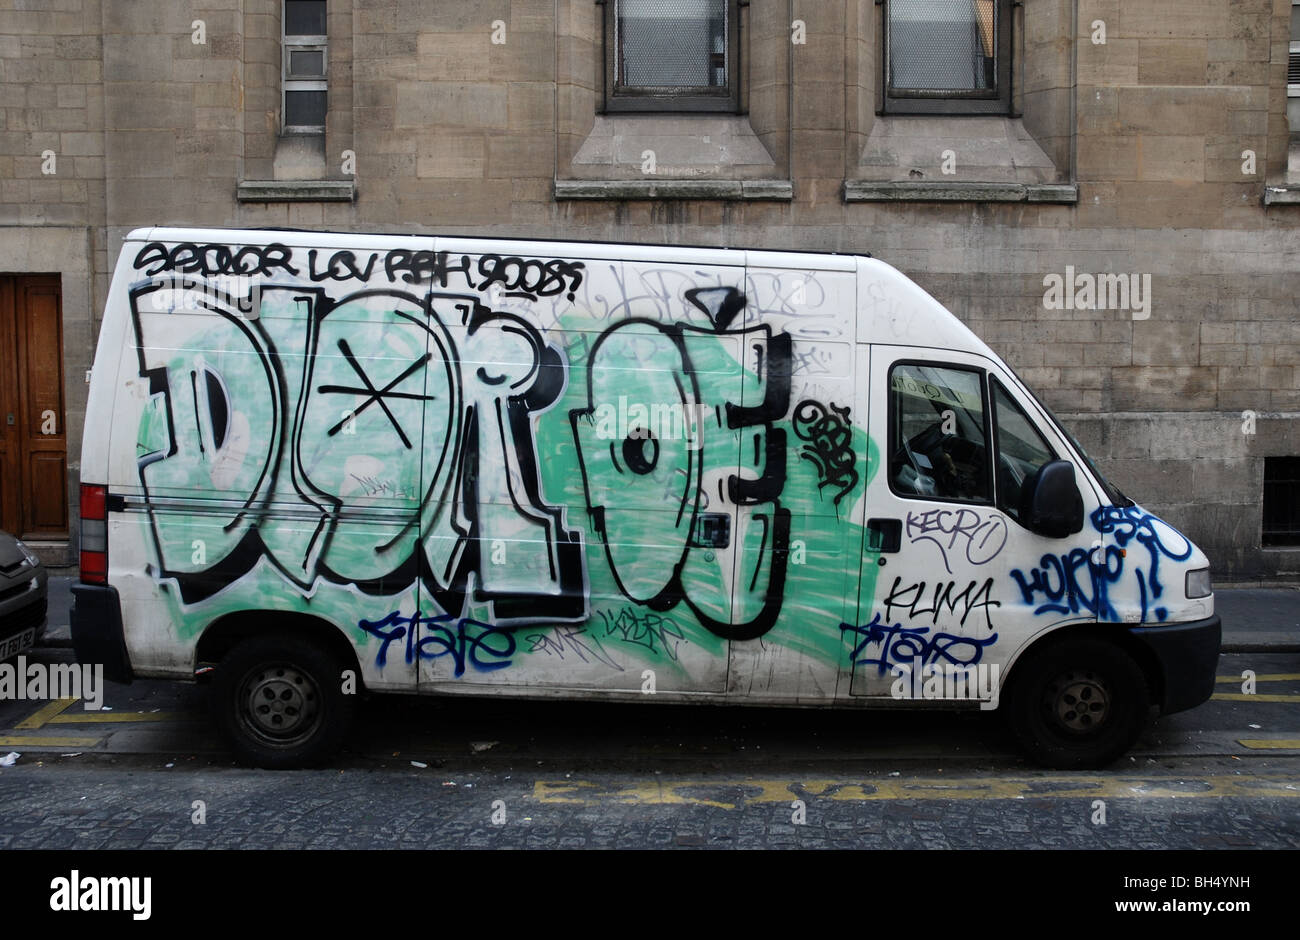 Graffiti covered van in Paris Stock Photo - Alamy